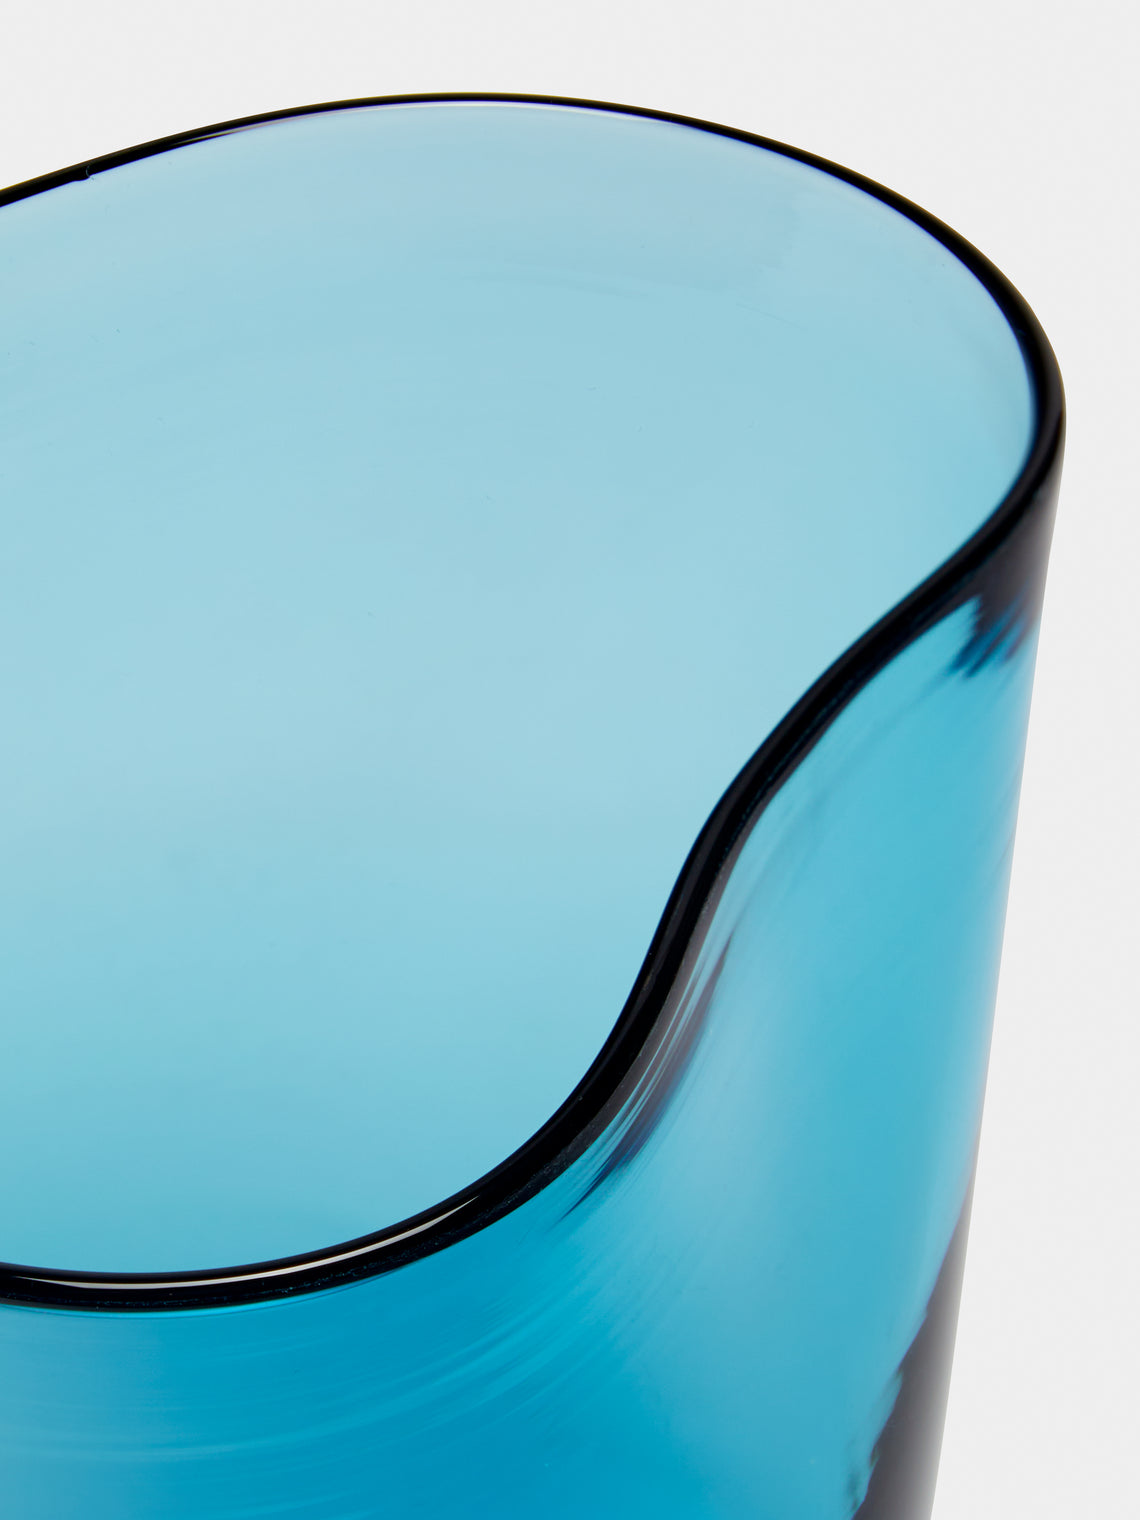 Micheluzzi Glass - Mosso Acqua Hand-Blown Murano Glass Tumbler - Teal - ABASK